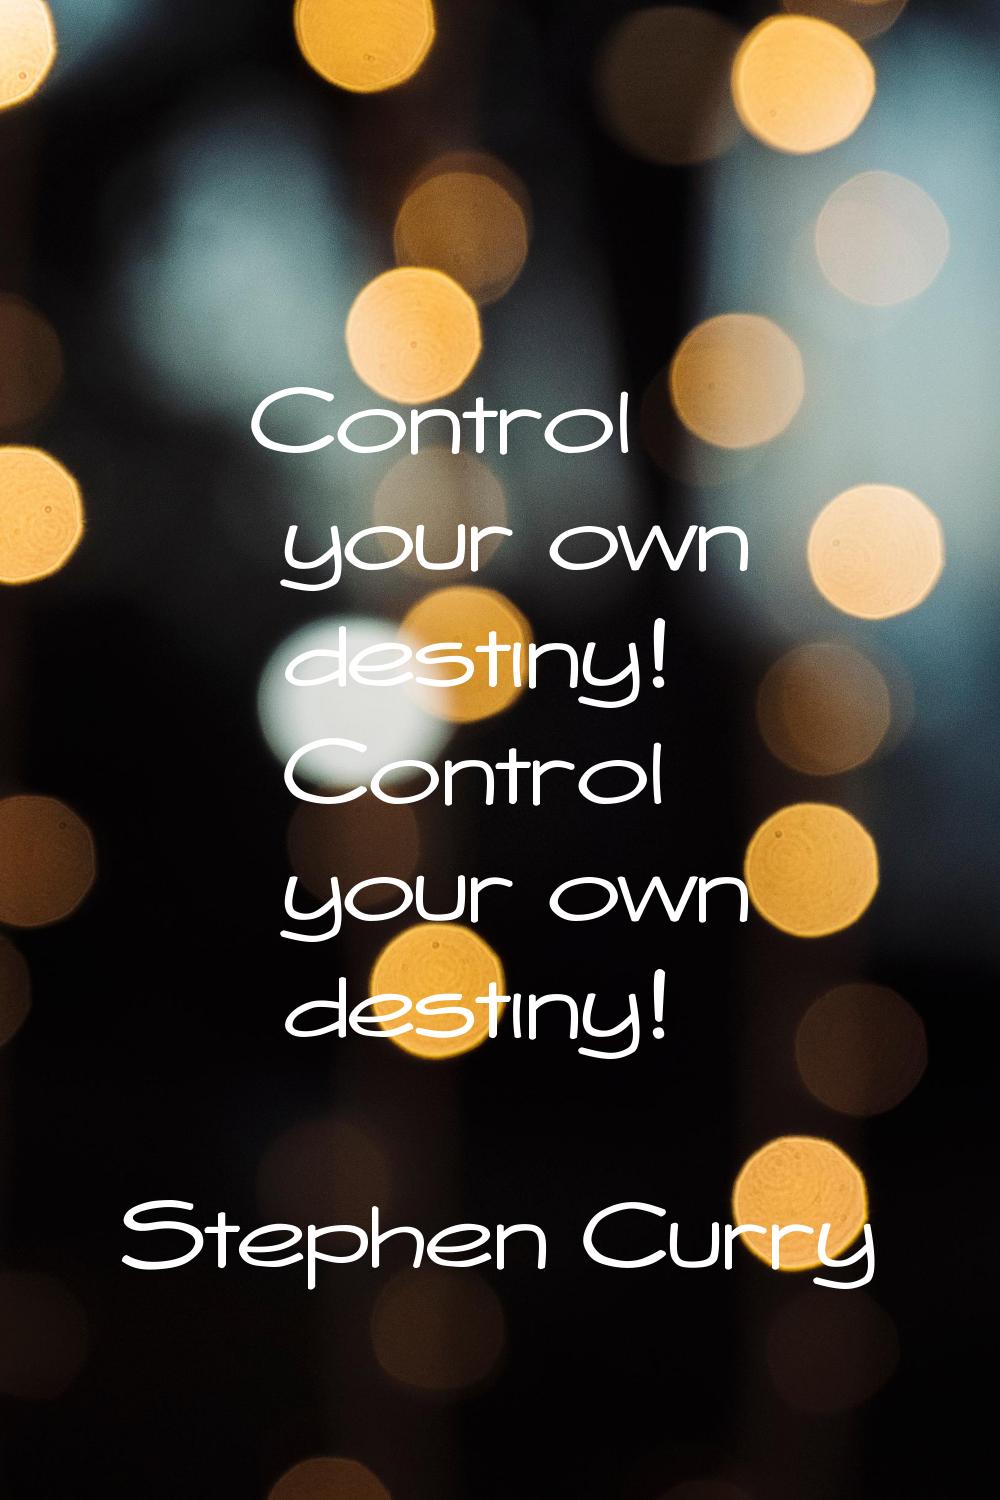 Control your own destiny! Control your own destiny!